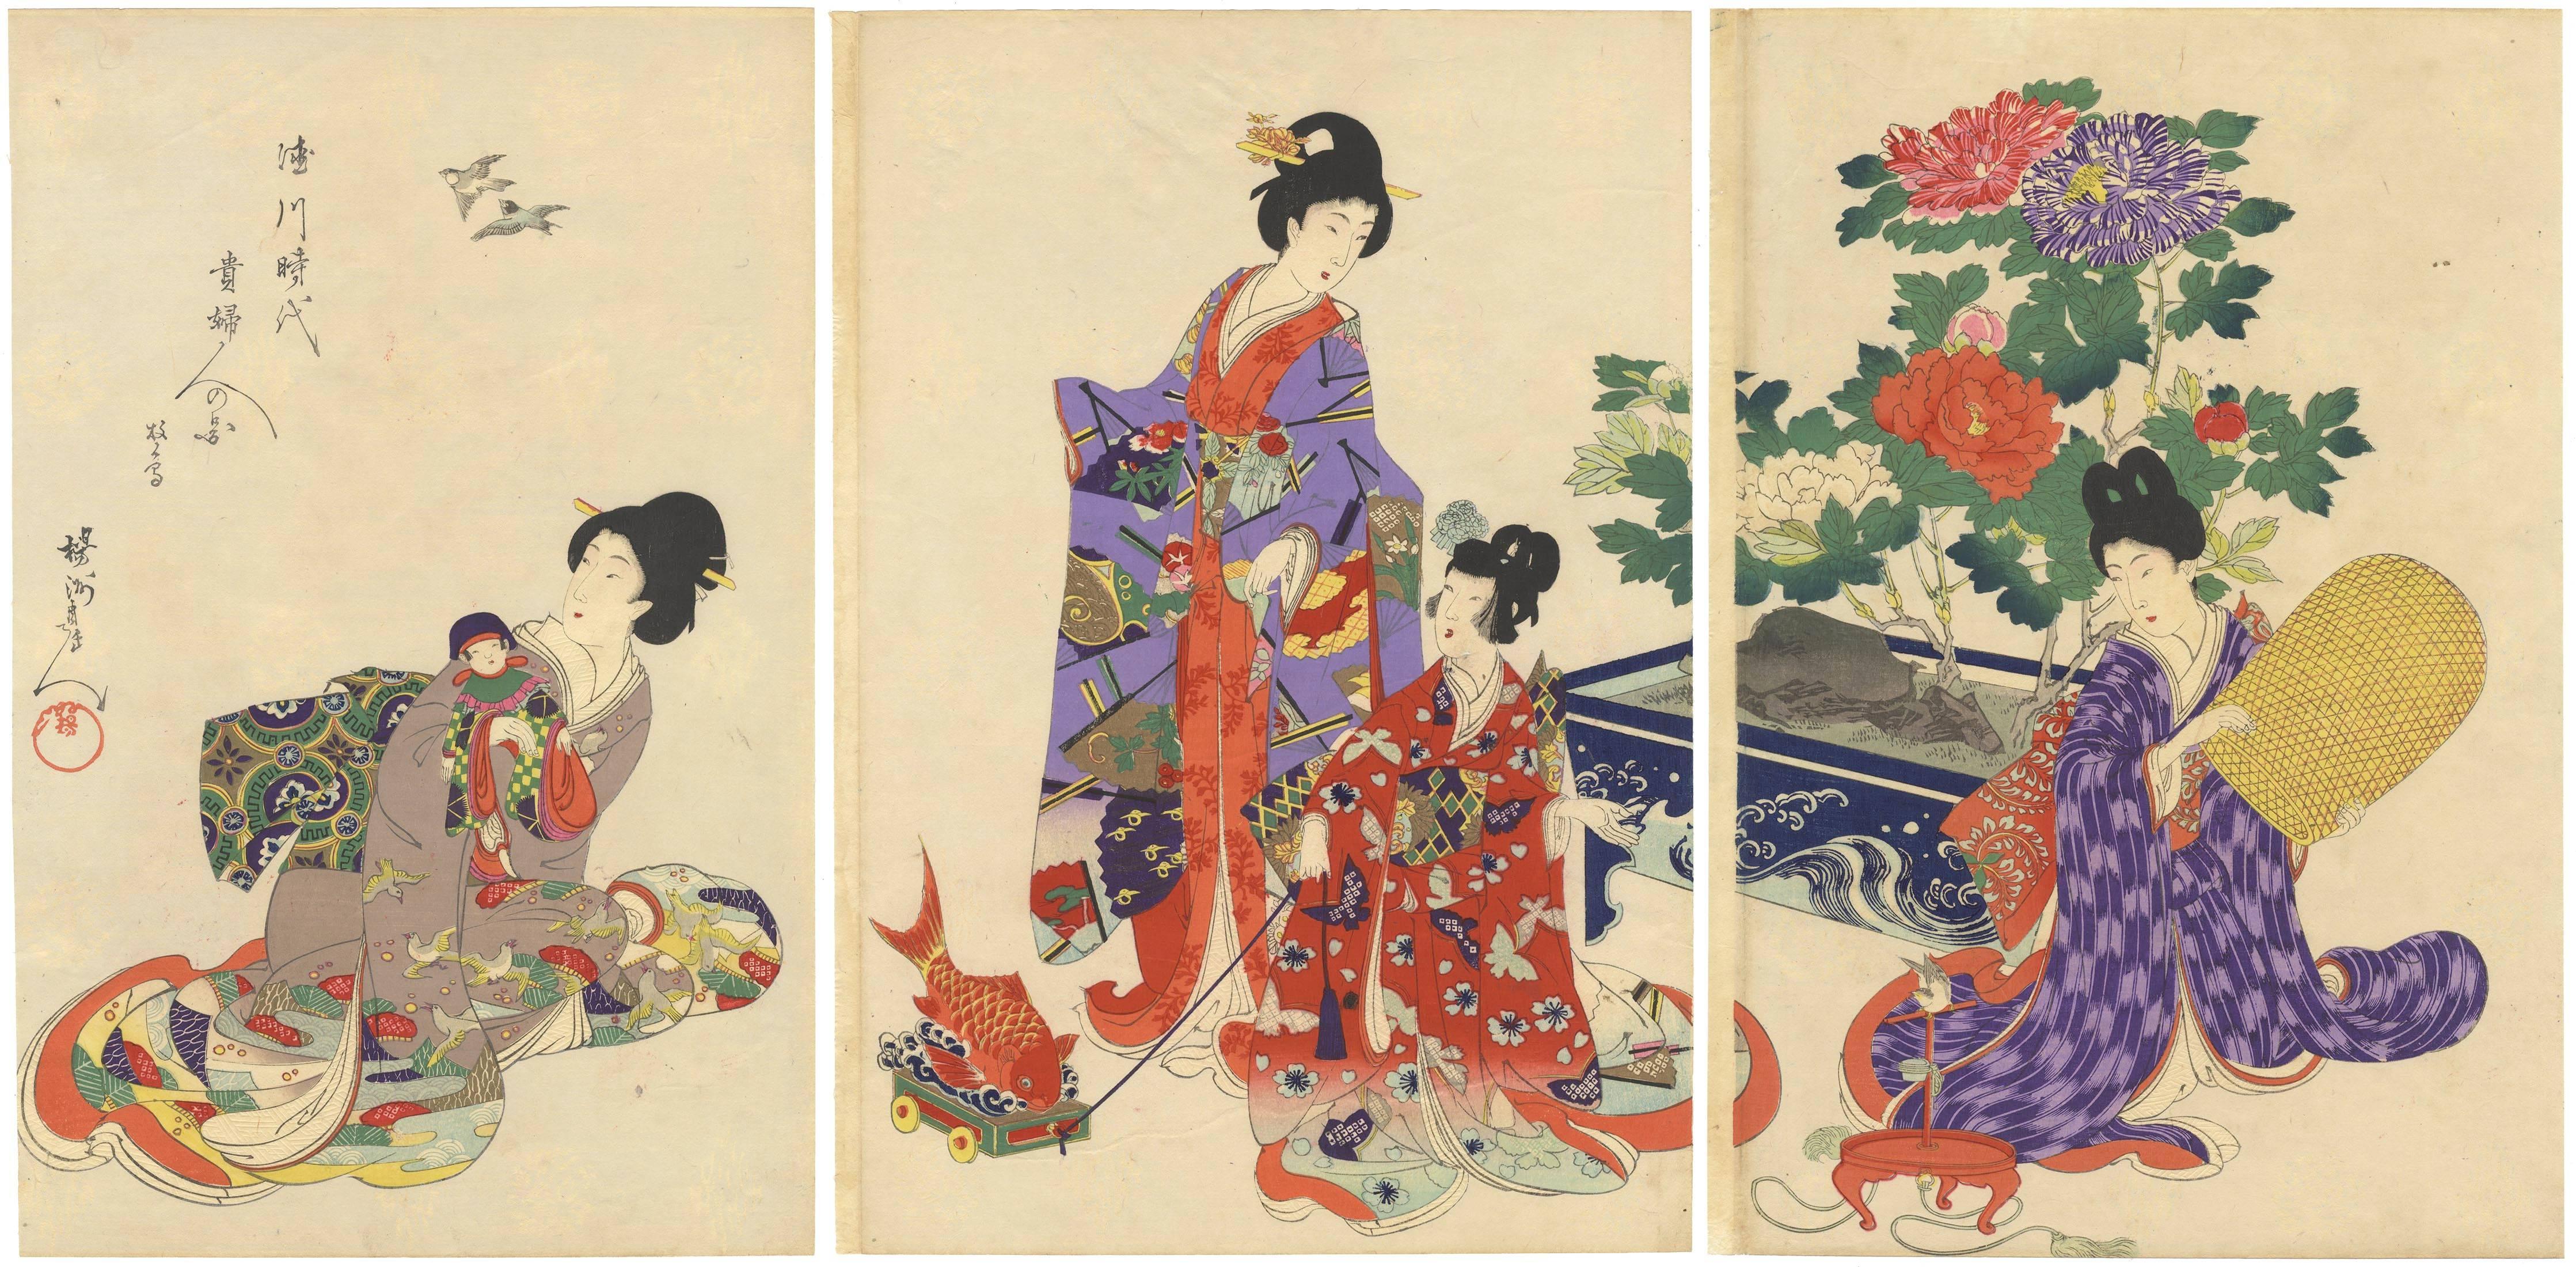 CHIKANOBU, Yoshu Portrait Print - Chikanobu, Japanese Woodblock Print, Court Ladies, Peony, Kimono Design, Beauty